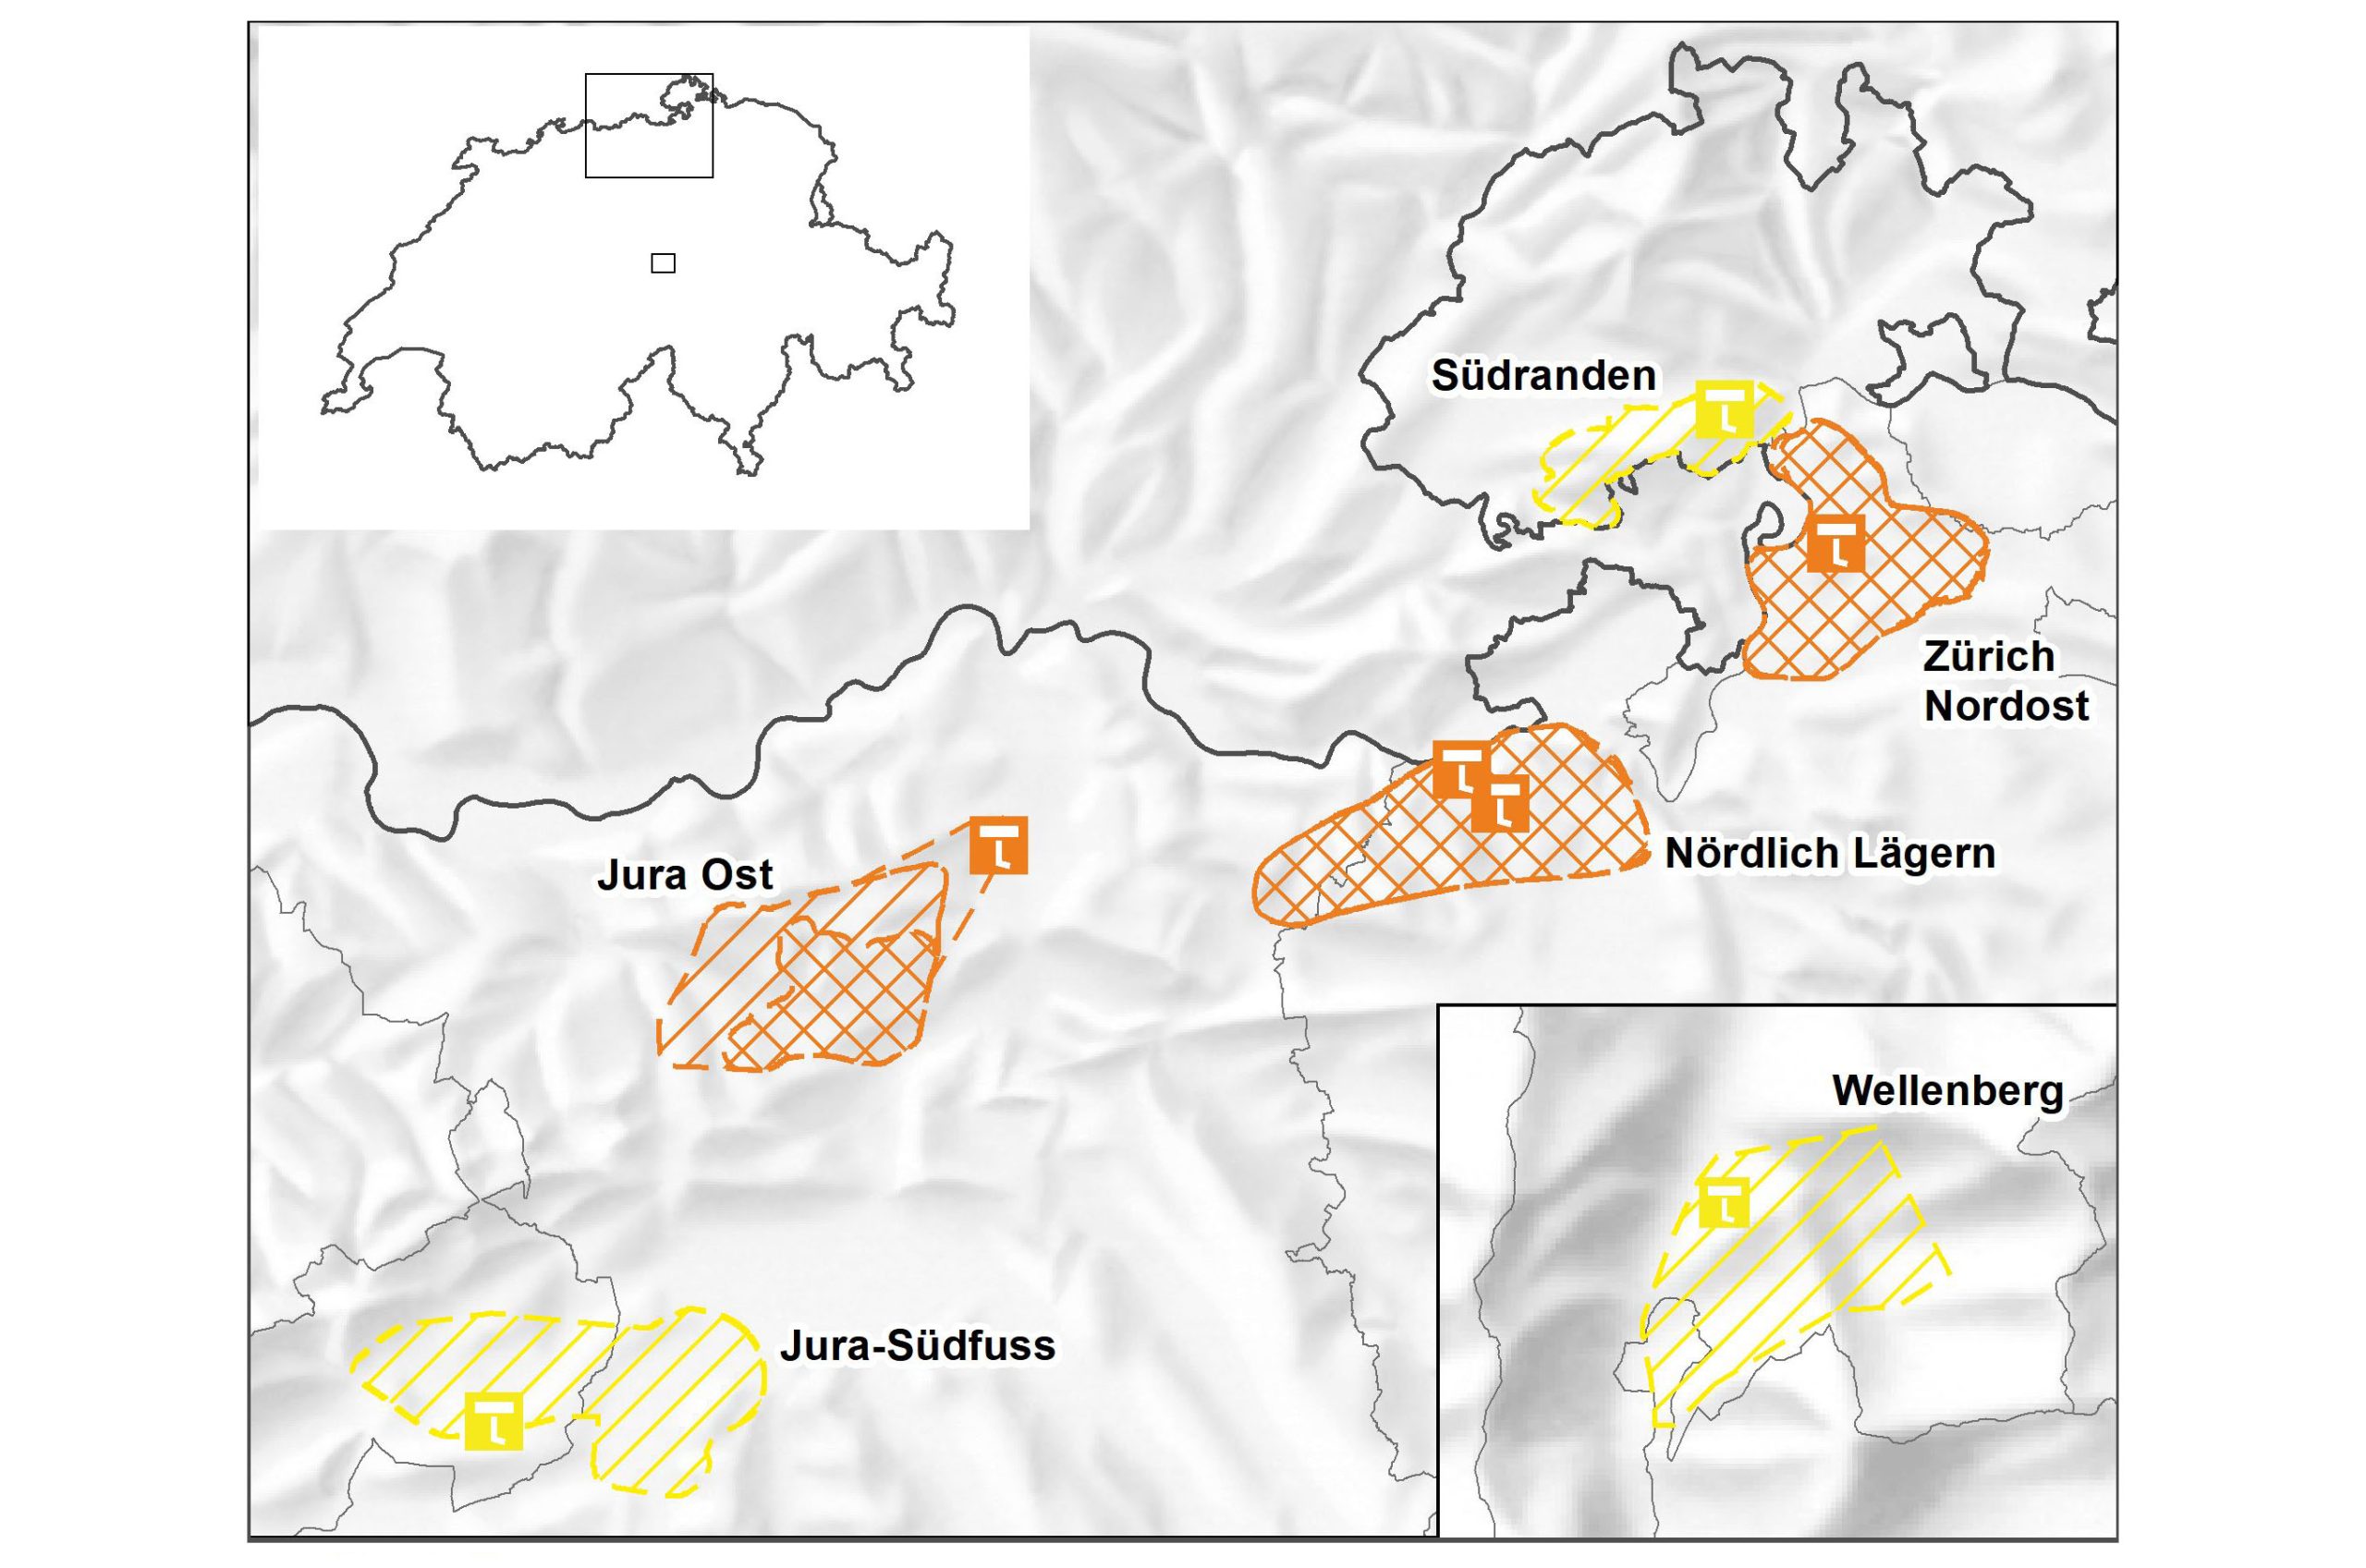 Karte von Dezember 2011 mit allen sechs möglichen Standorten fürs Tiefenlager: Jura Ost, Nördlich Lägern, Zürich Nordost, Jura Südfuss, Wellenberg und Südranden